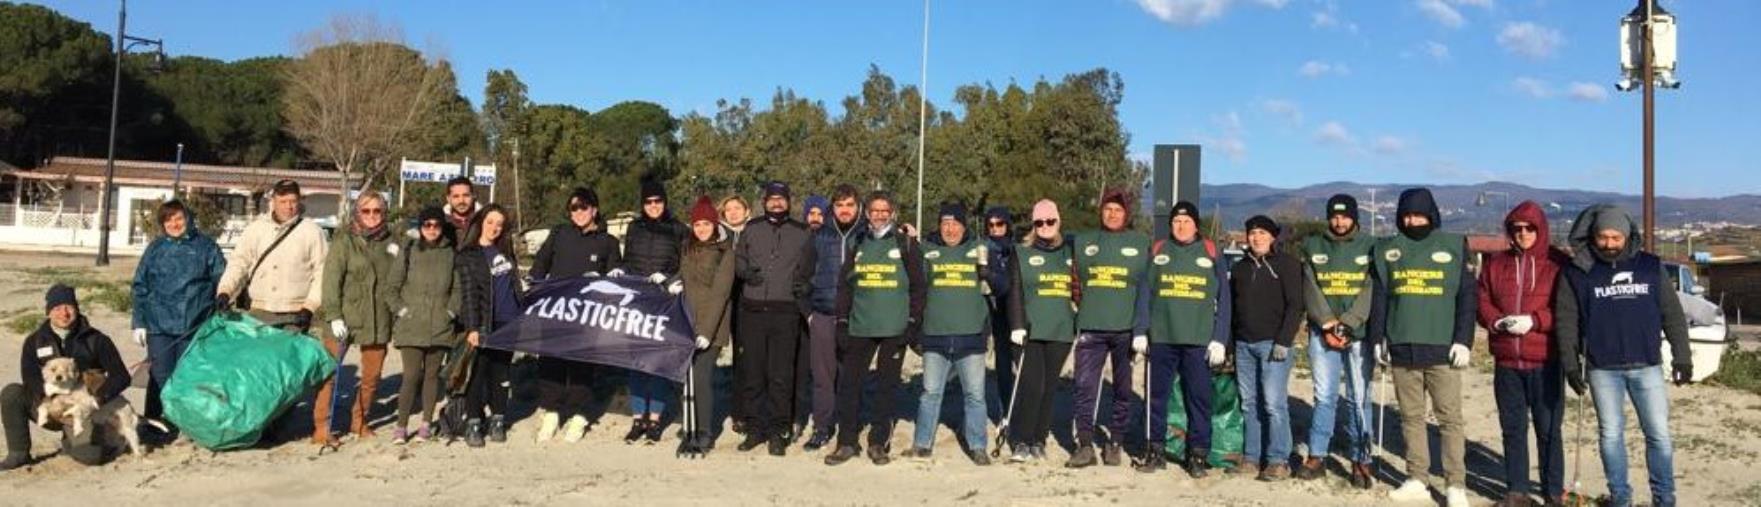 Cropani, il freddo non ha fermato i volontari: riuscita l'iniziativa "Giornata ecologica 2023"